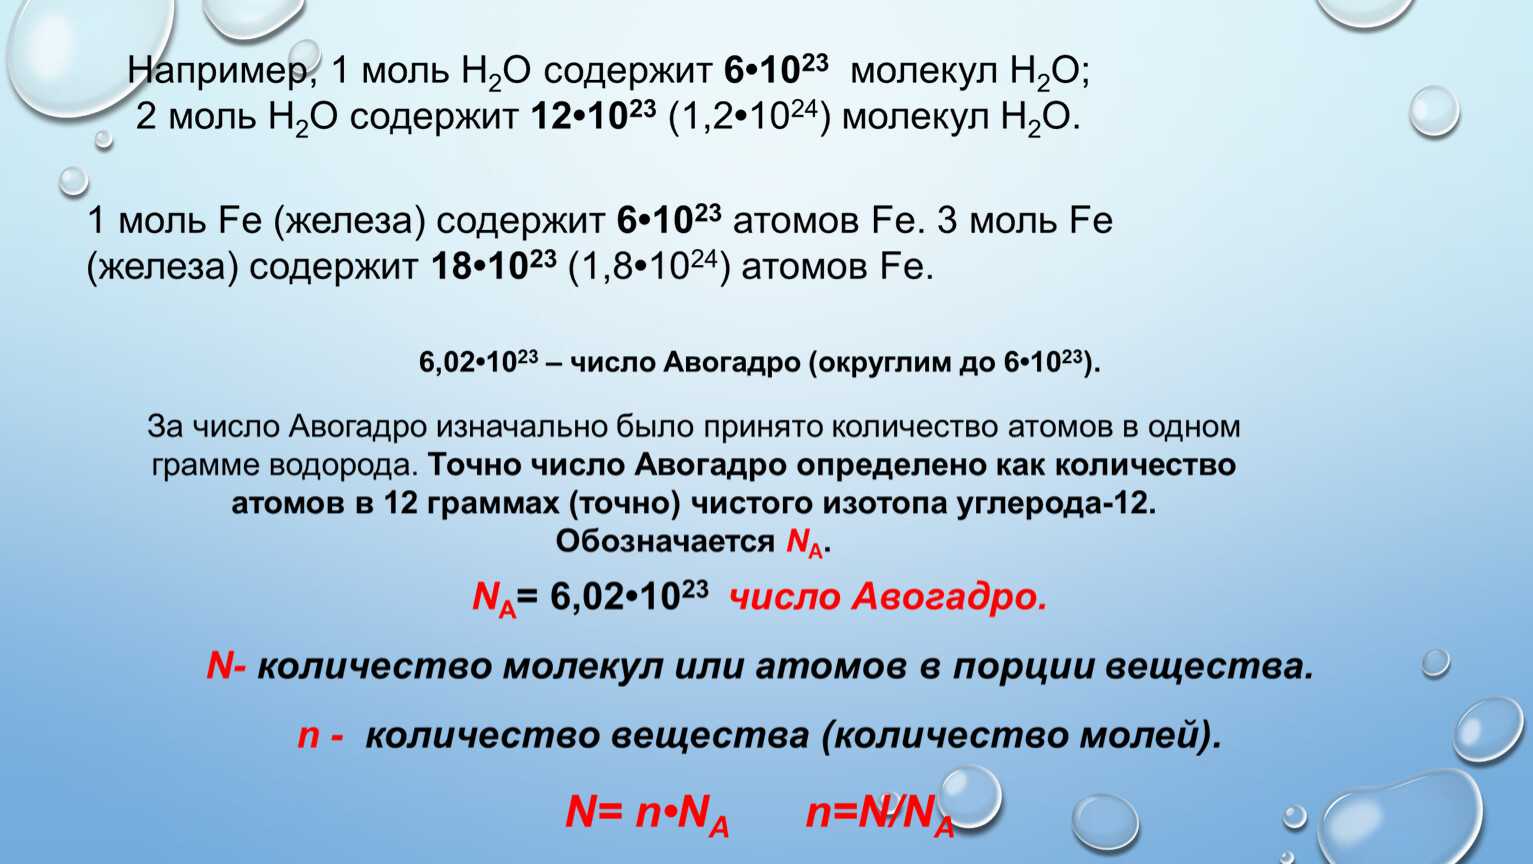 Сборник основных формул по химии для вузов. i. общая химия (м. а. рябов)